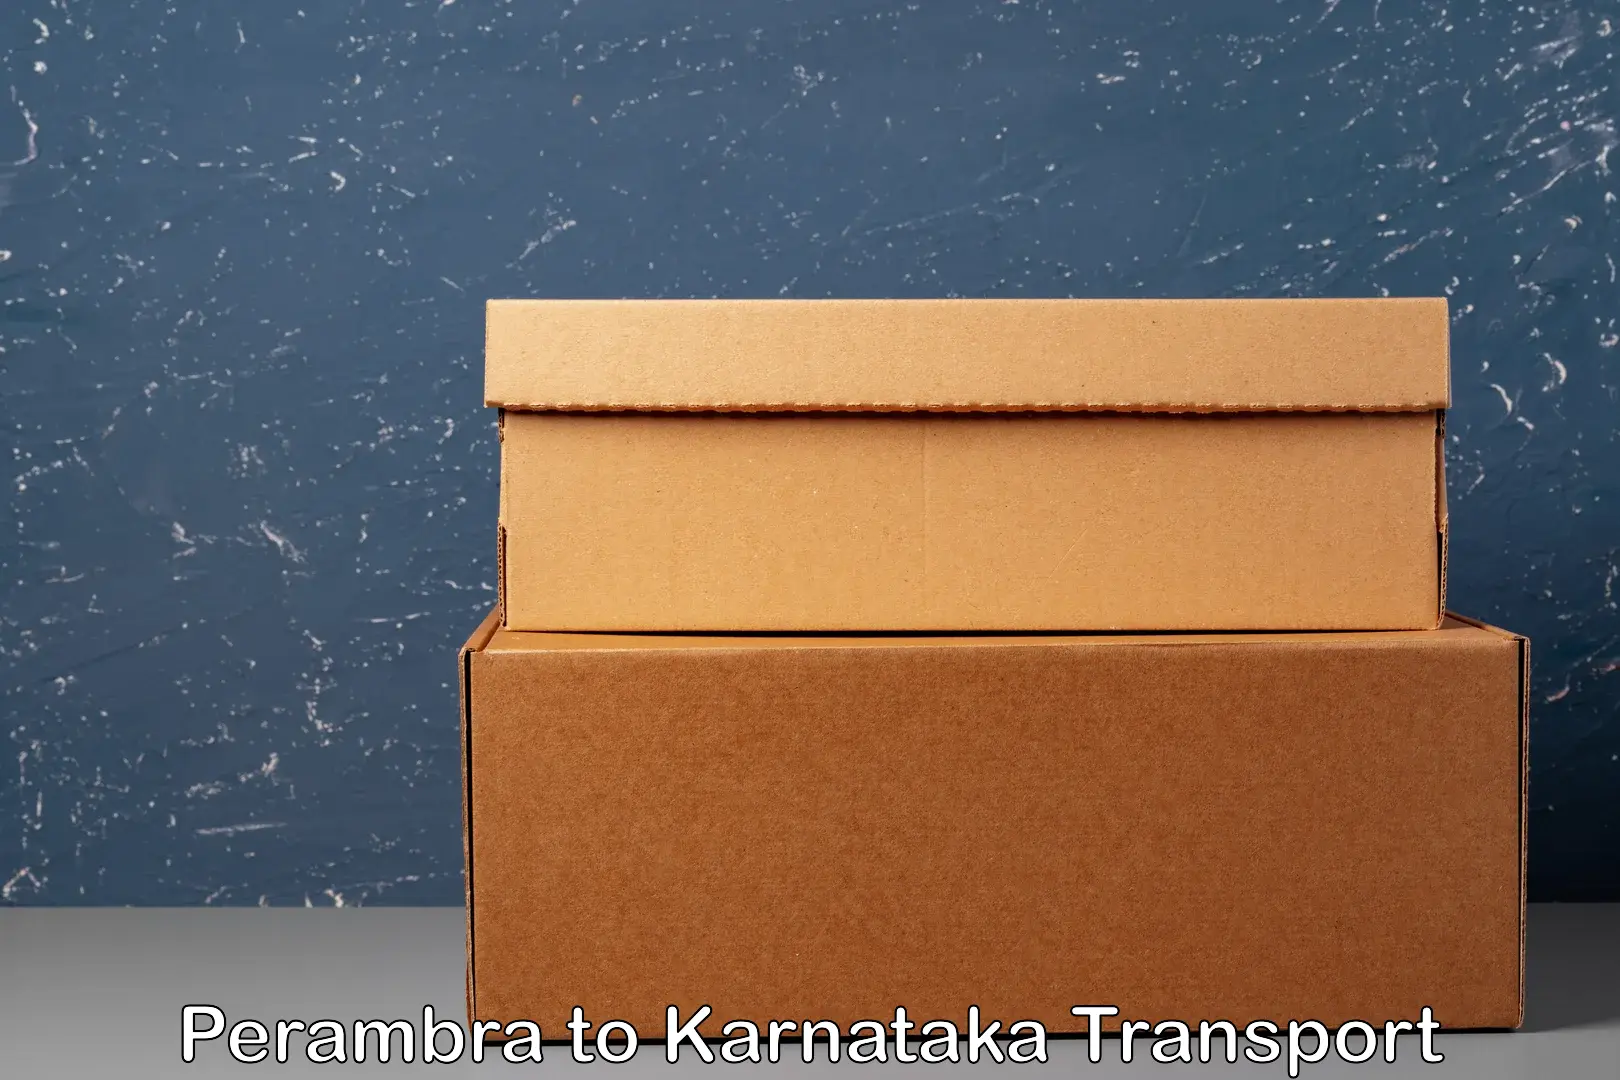 Two wheeler parcel service Perambra to Chikkamagaluru